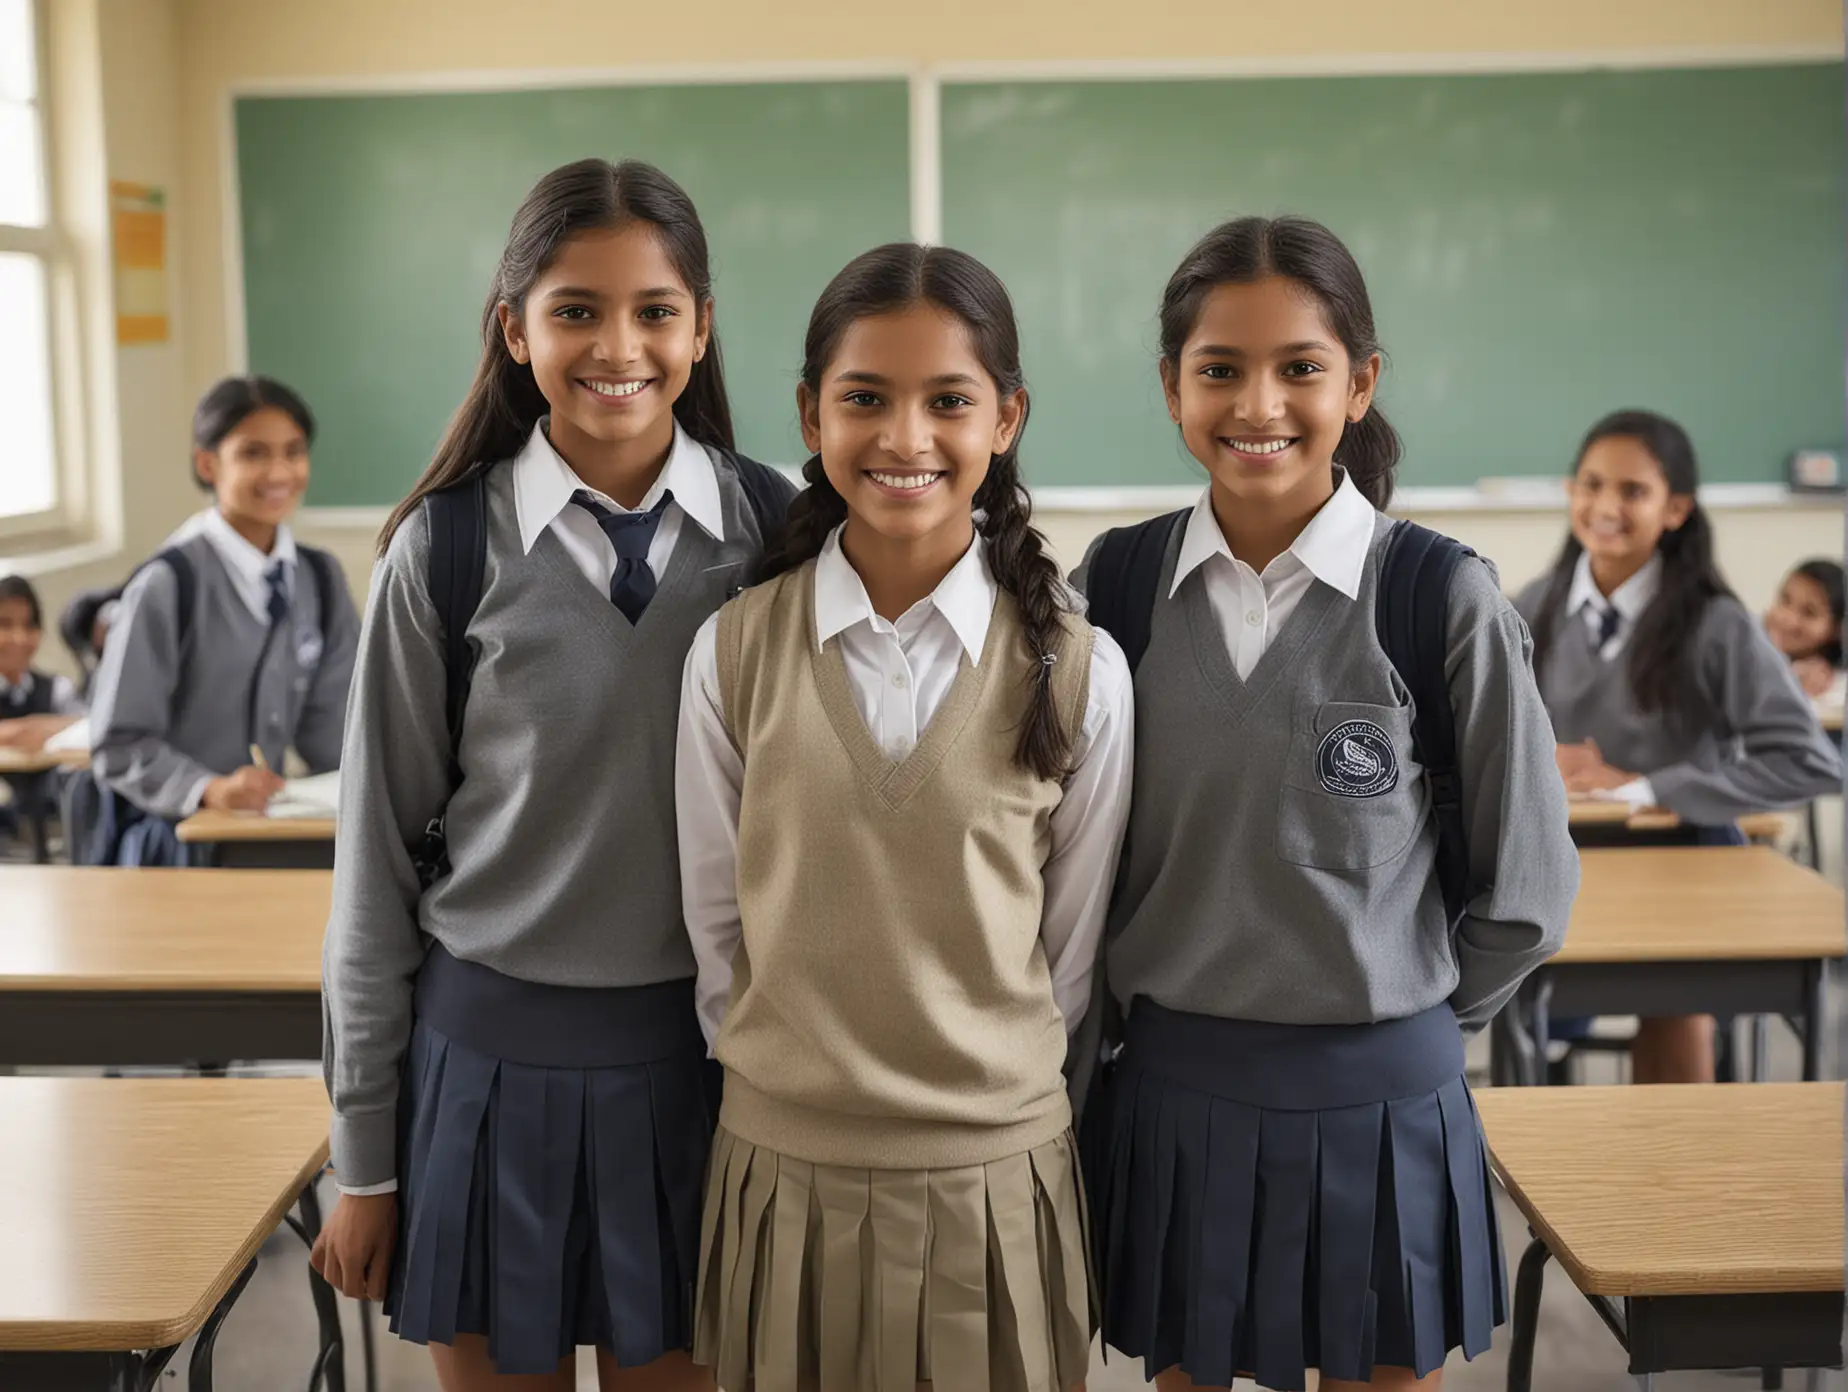 Indian-Schoolgirls-Smiling-in-Classroom-Setting